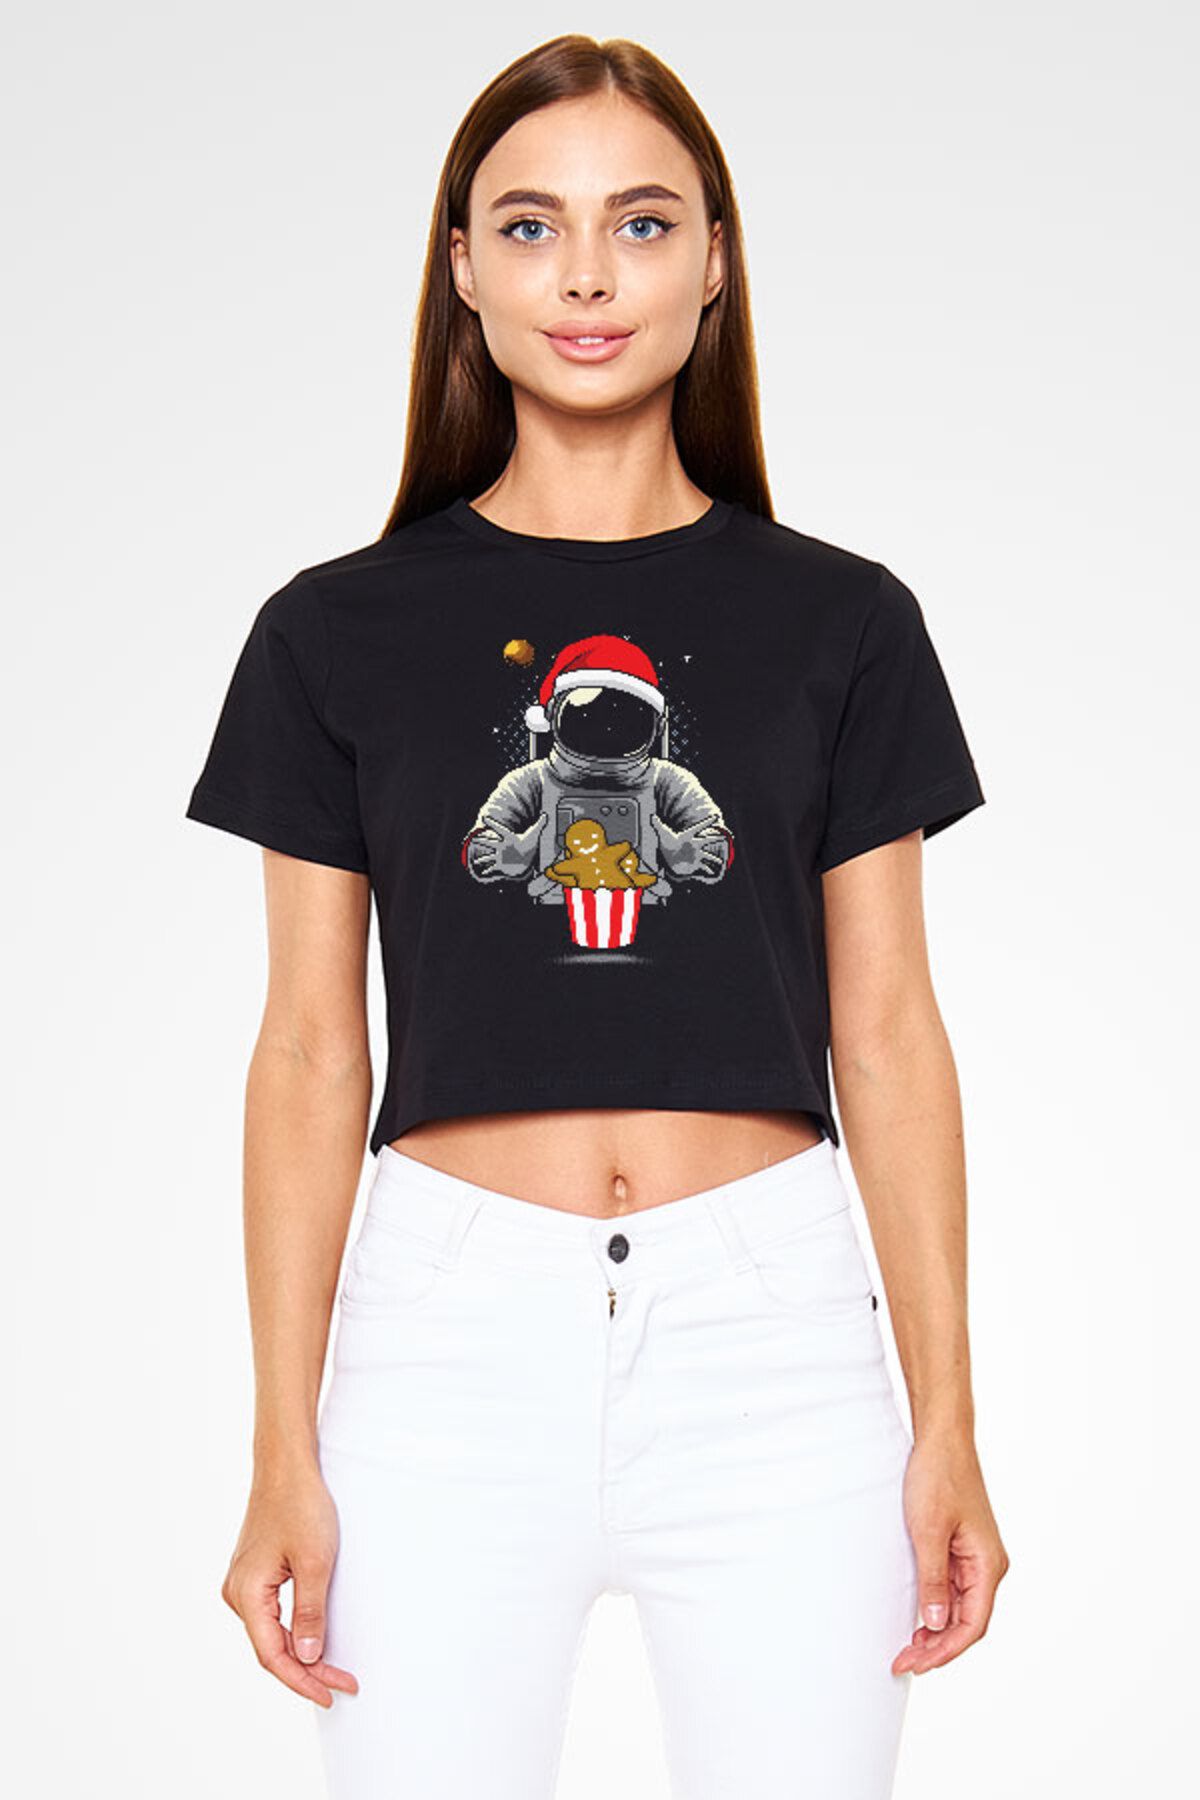 Darkhane Yeni Yıl Yılbaşı Astronot Siyah Unisex Crop Top Tişört T-Shirt